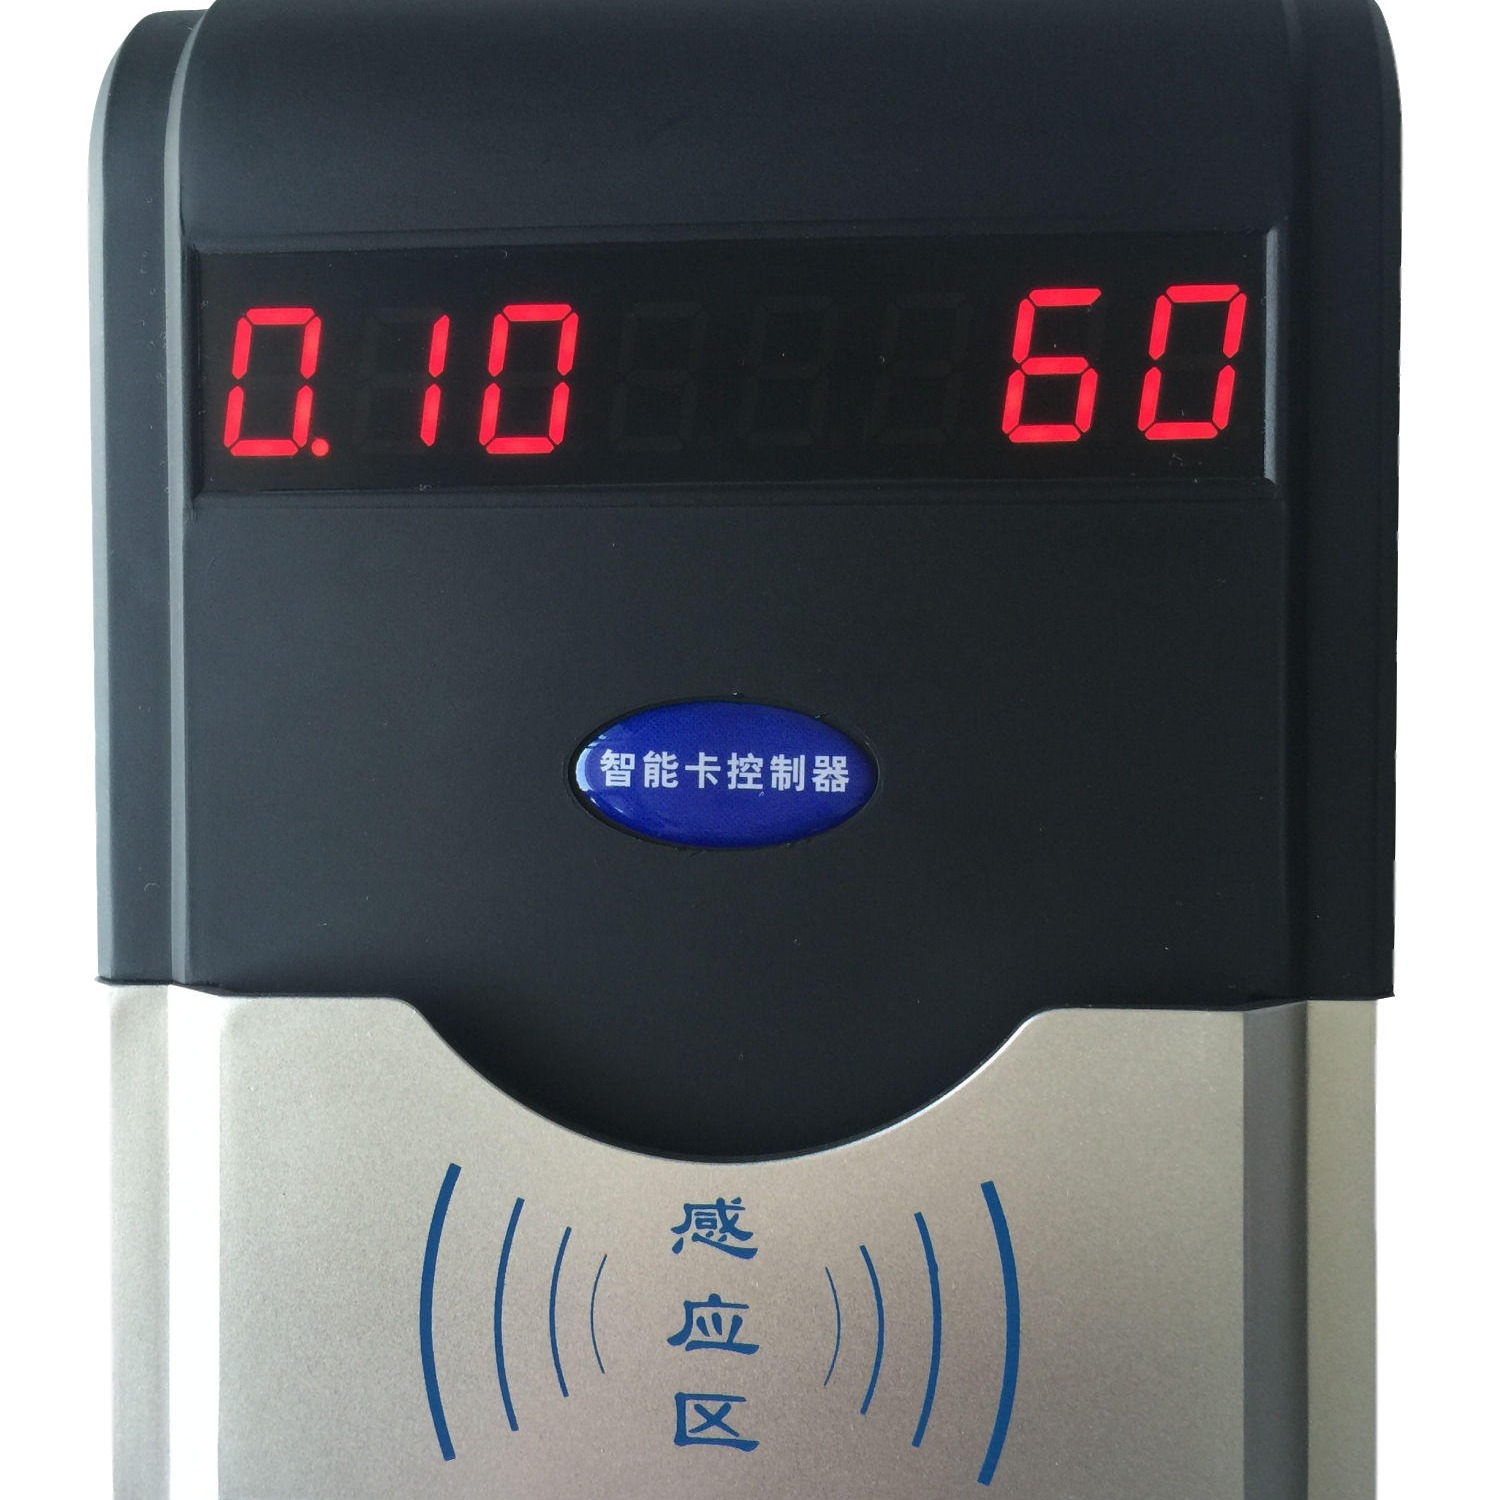 兴天下HF-660 IC卡浴室刷卡机,淋浴水控系统,浴室水控器